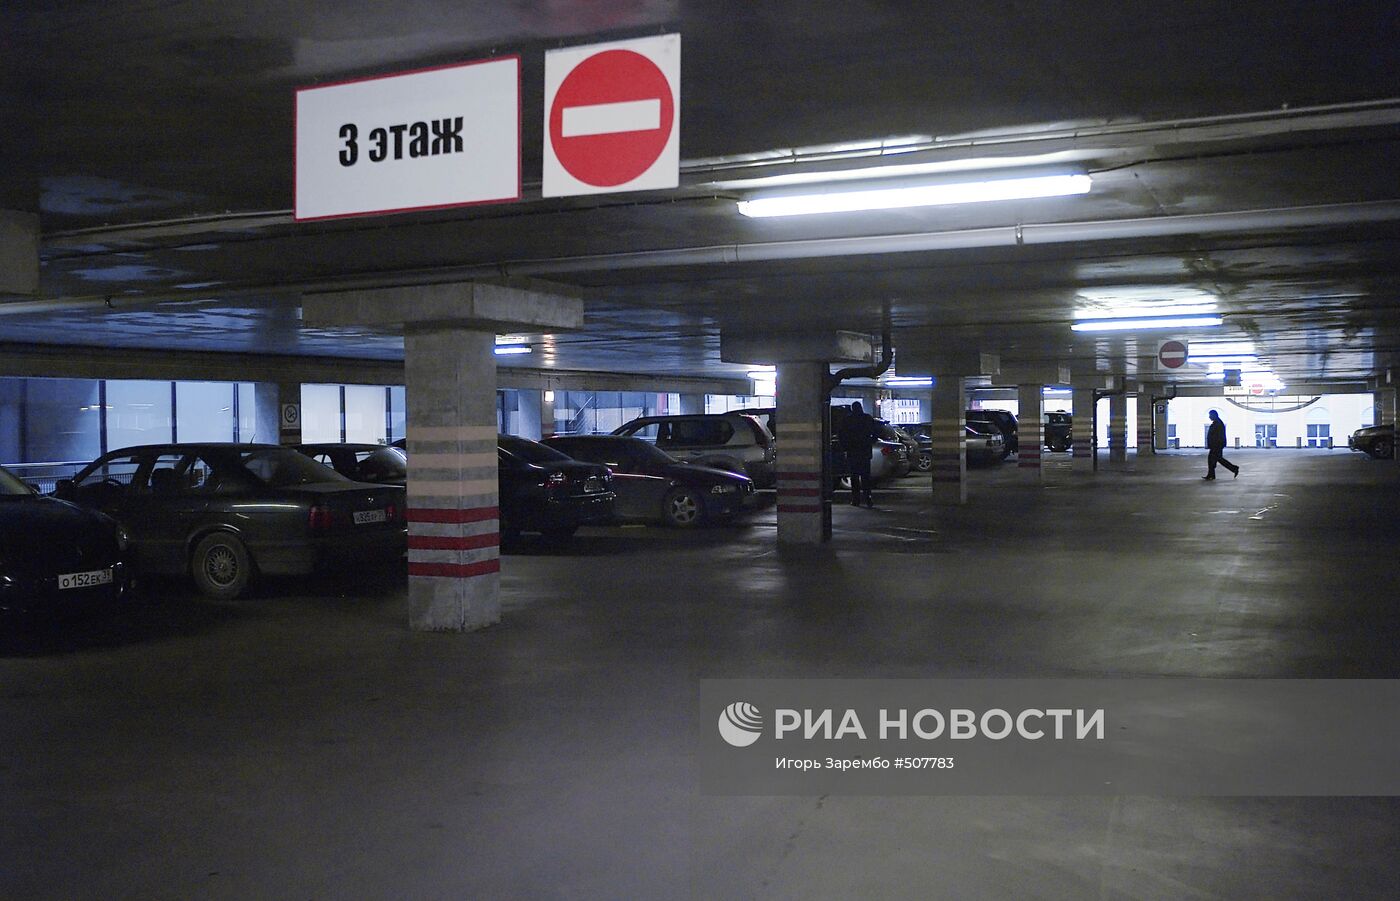 Многоярусная семиэтажная парковка в ТЦ "Акрополь" в Калининграде